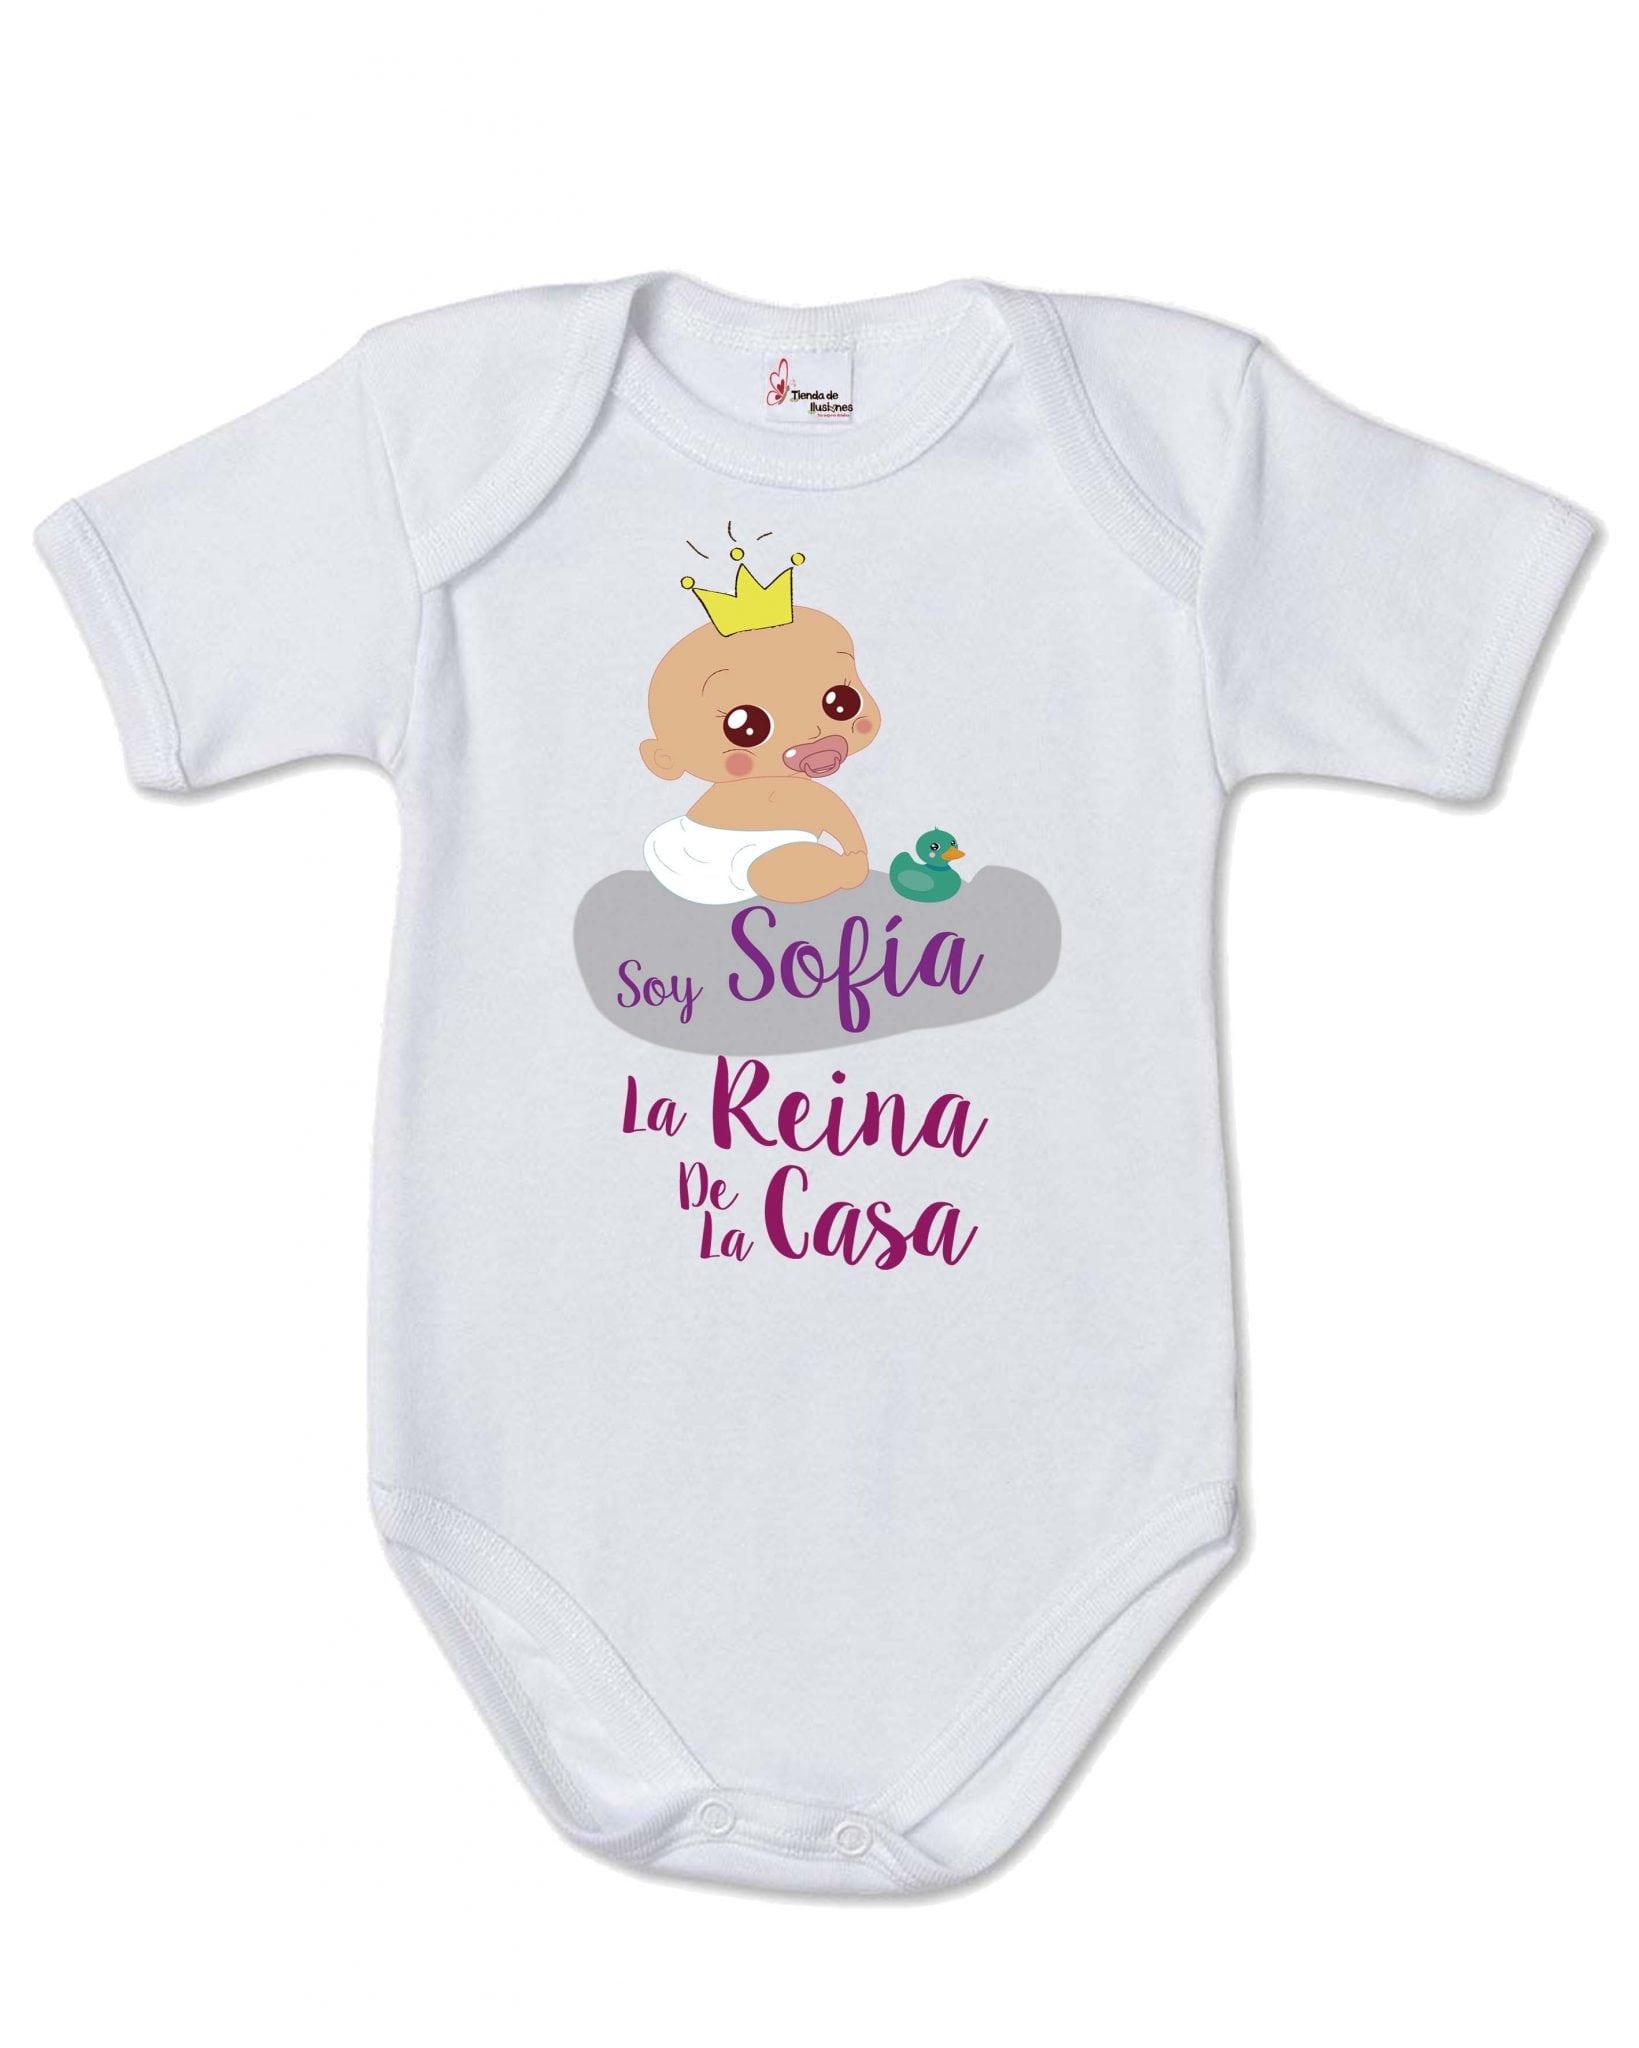 Body bebé personalizado corona Rey de la casa - Tienda de ilusiones